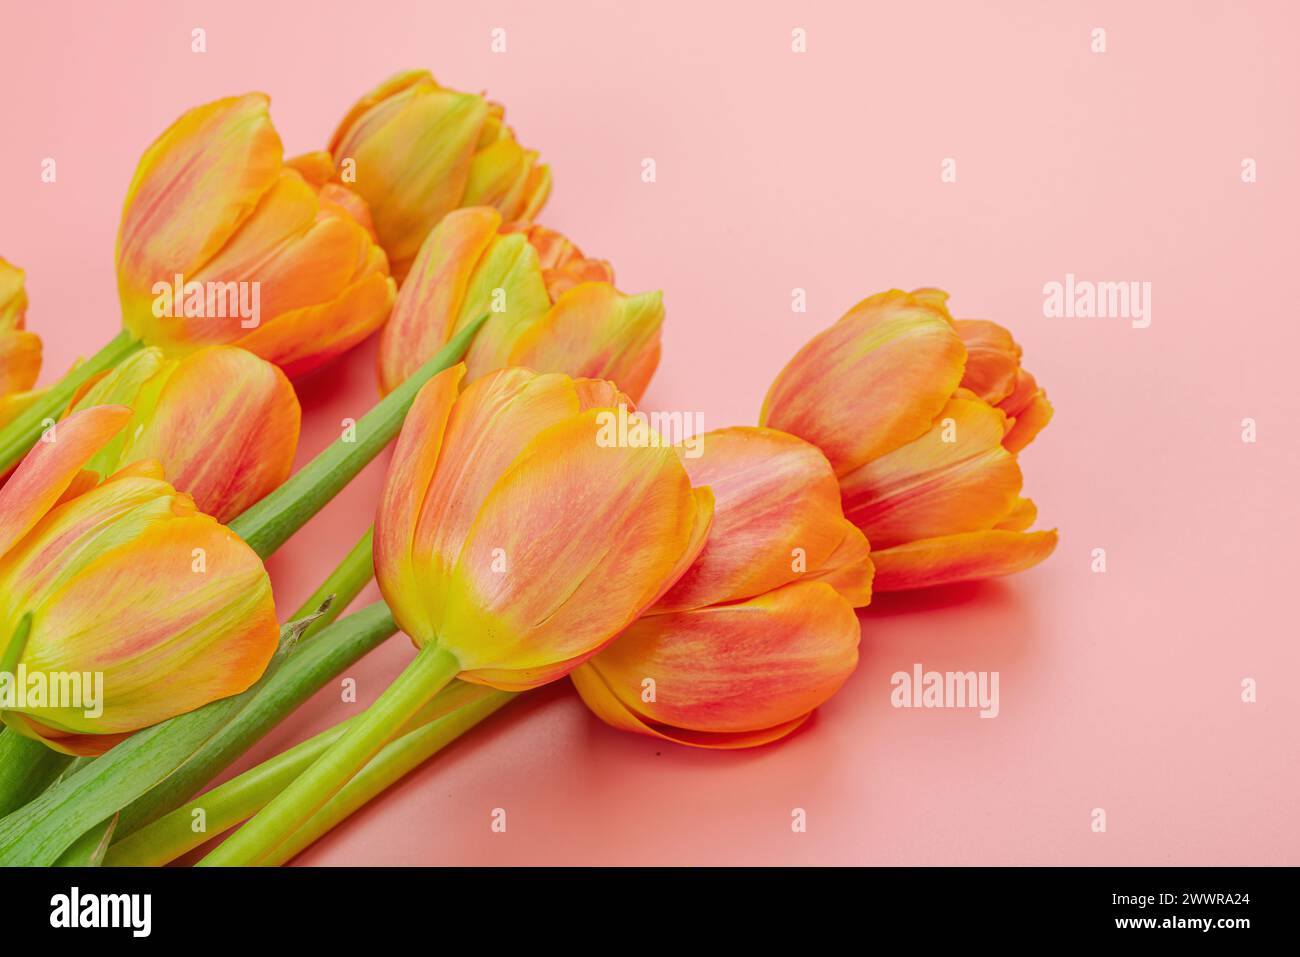 Leuchtend orange Tulpen auf pastellrosa Hintergrund. Festliches Konzept für Muttertag oder Valentinstag. Grußkarte, Osterliege, beste Wünsche, Co Stockfoto